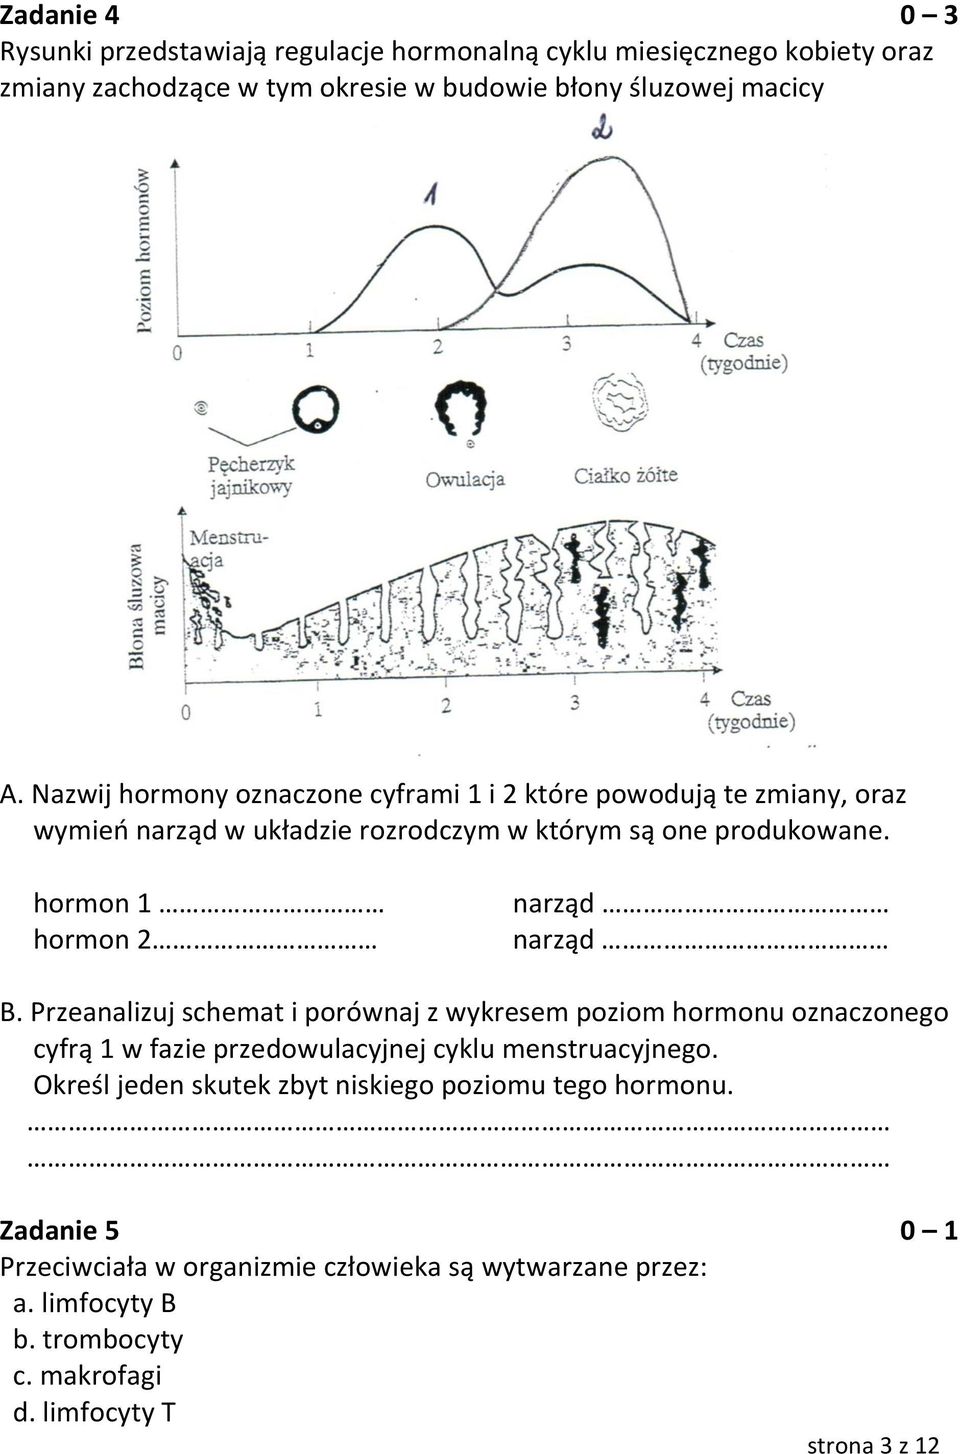 hormon 1 hormon 2 narząd narząd B. Przeanalizuj schemat i porównaj z wykresem poziom hormonu oznaczonego cyfrą 1 w fazie przedowulacyjnej cyklu menstruacyjnego.